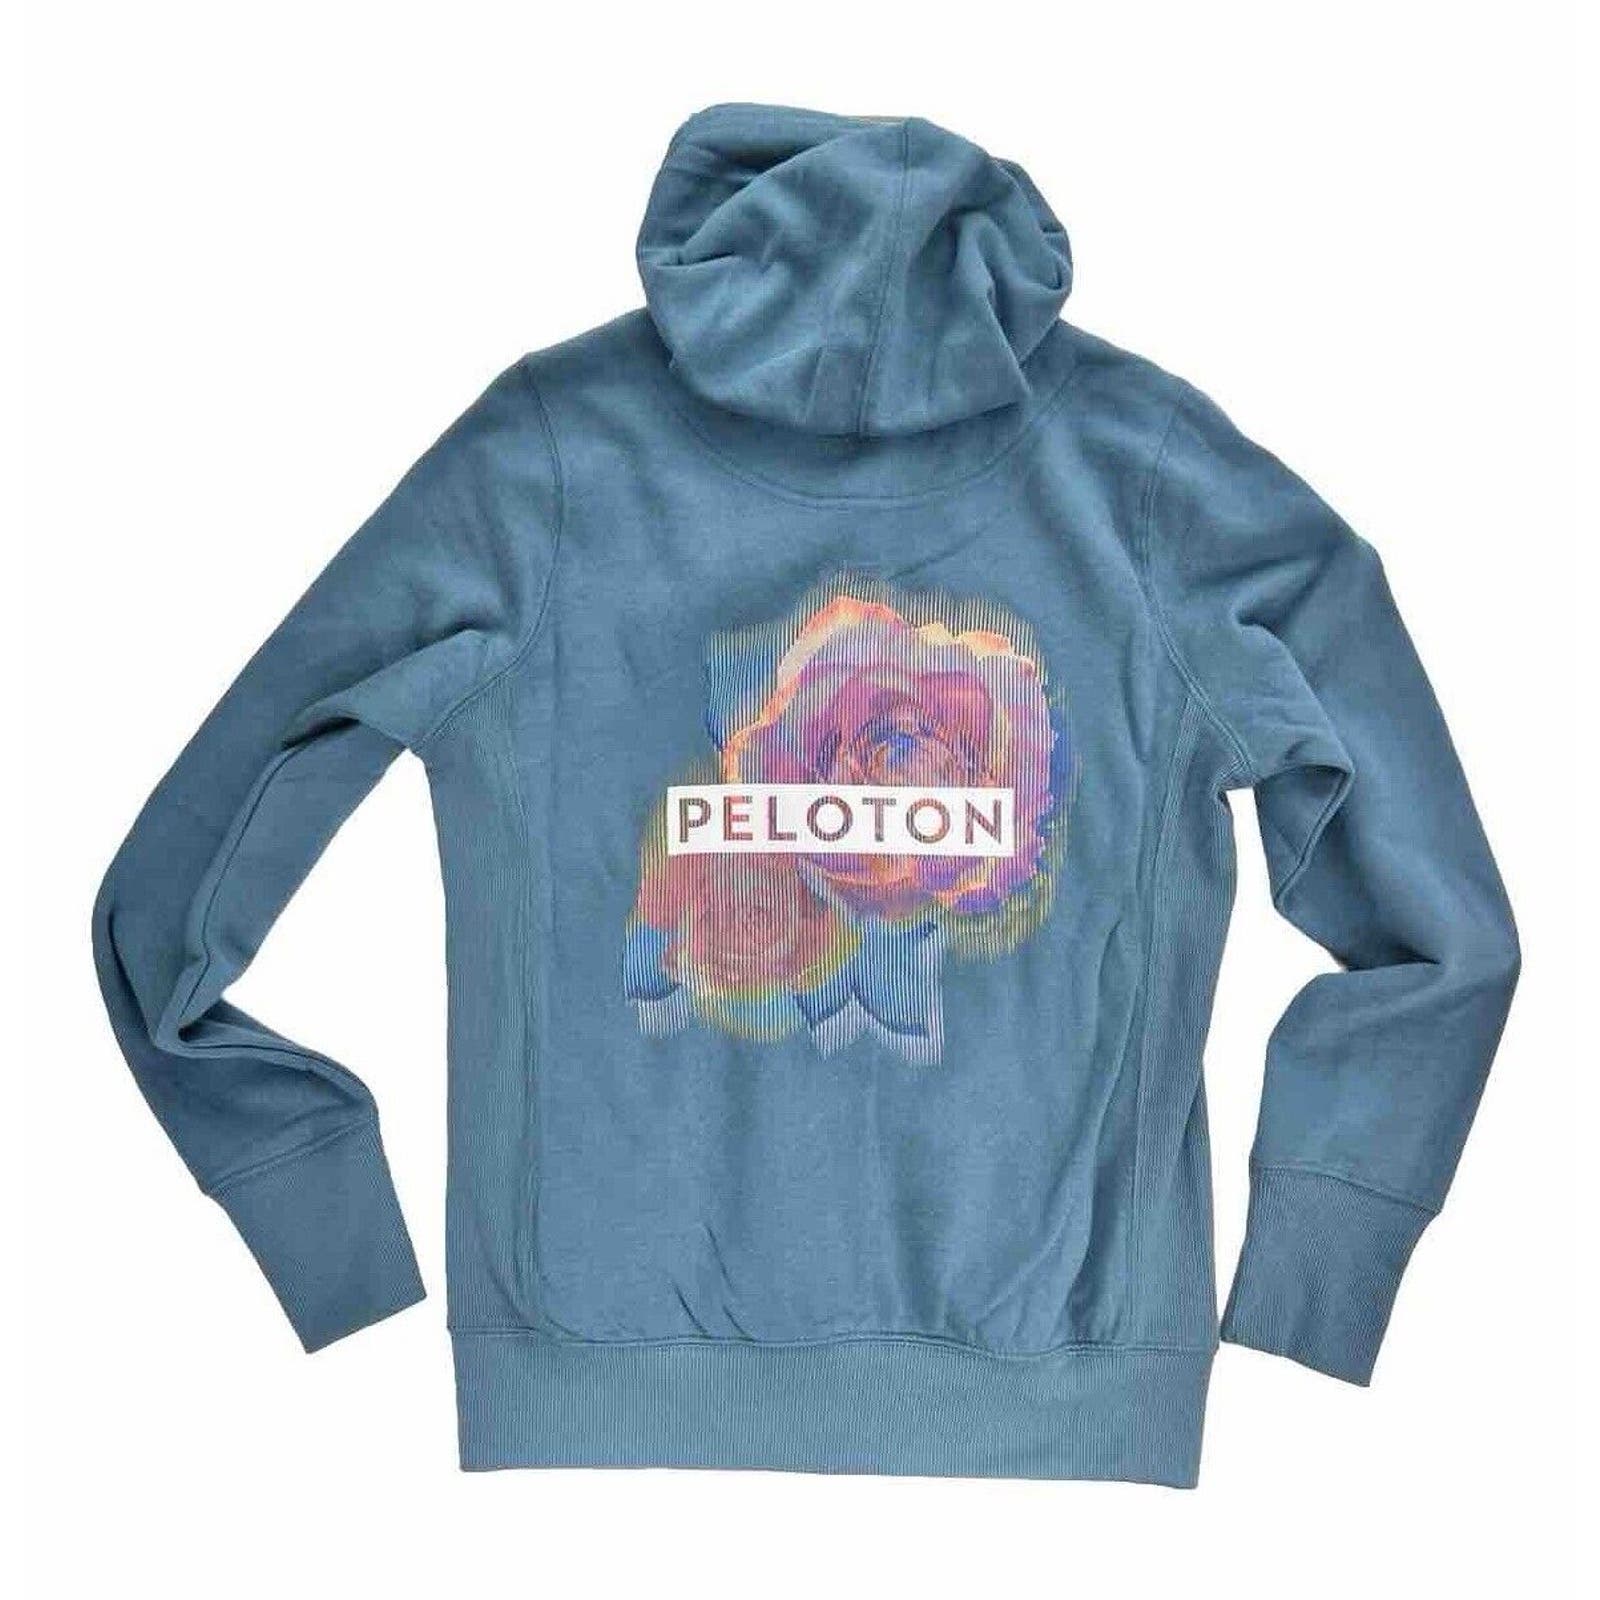 Peloton Digi Bloom Soft Lightweight Full Zip Hoodie Women’s Small Teal Blue